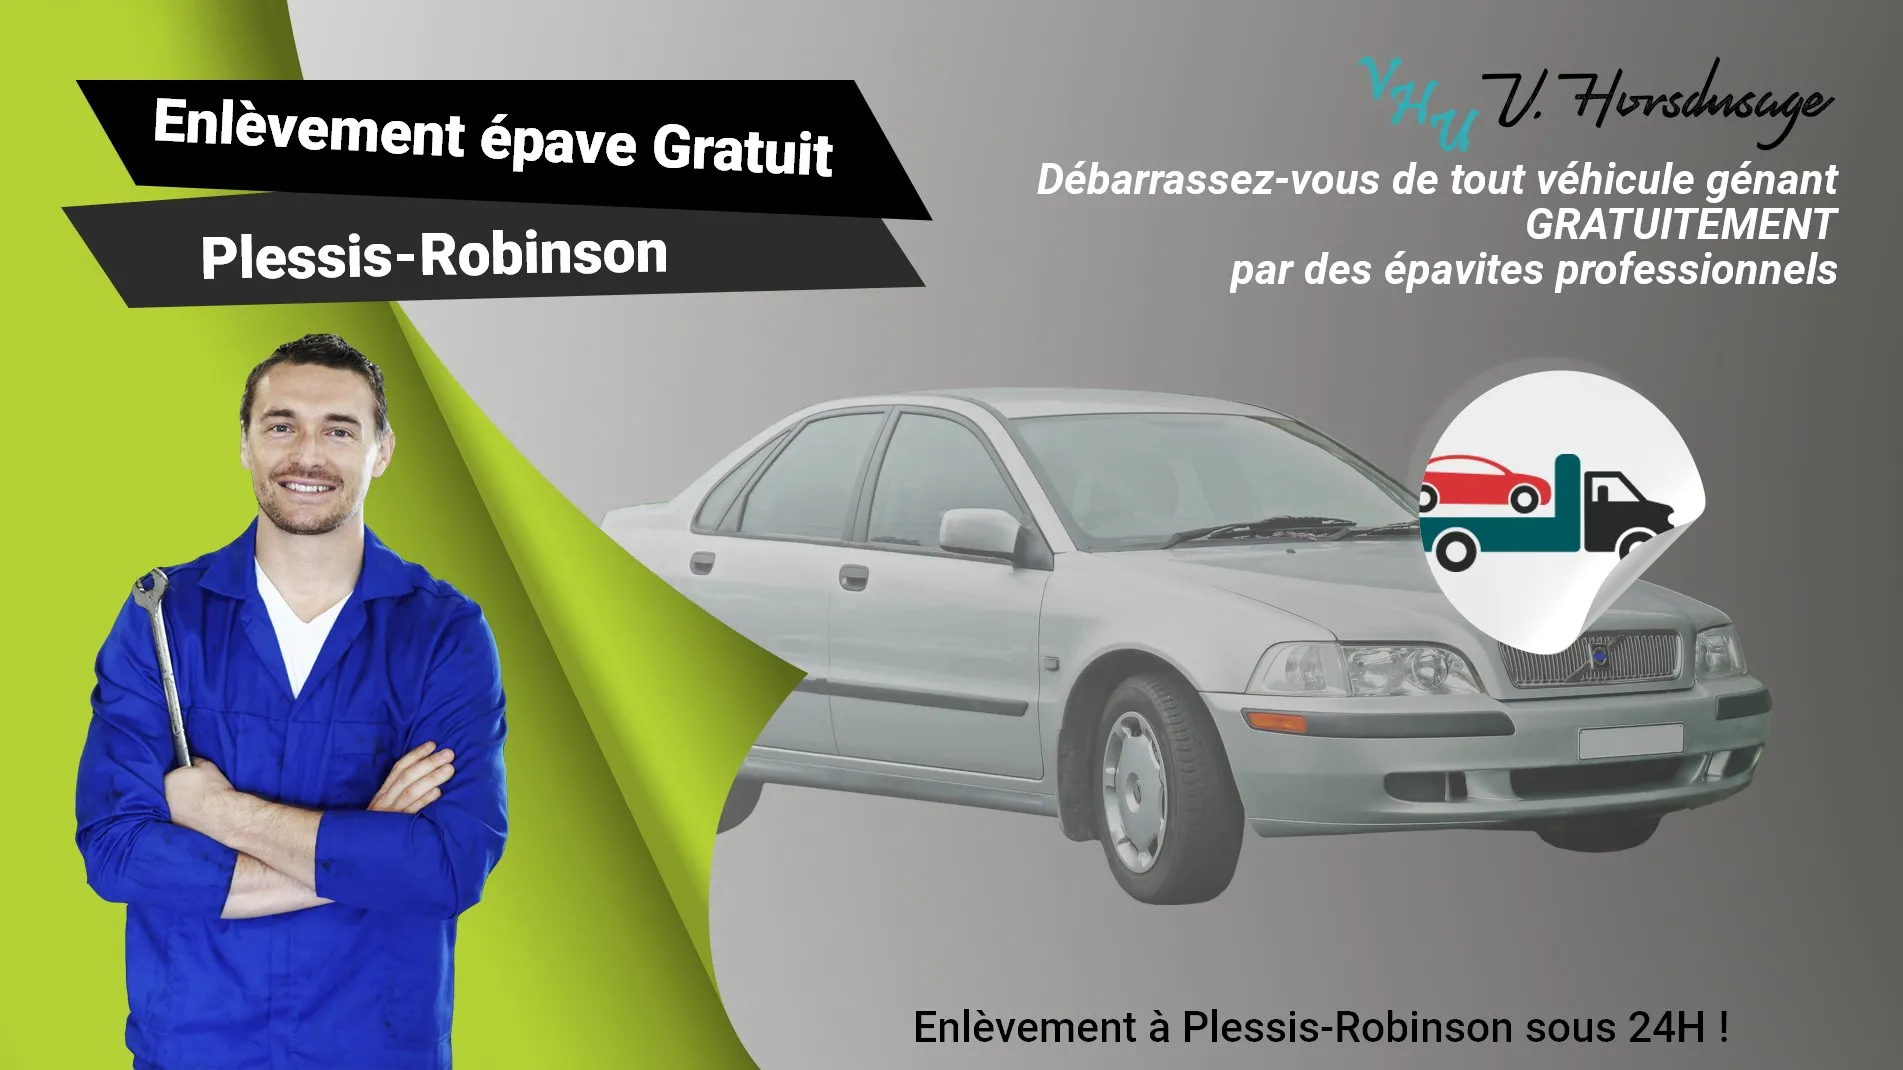 Pour un enlèvement gratuit à Plessis-Robinson, contactez nos épavistes agréé VHU